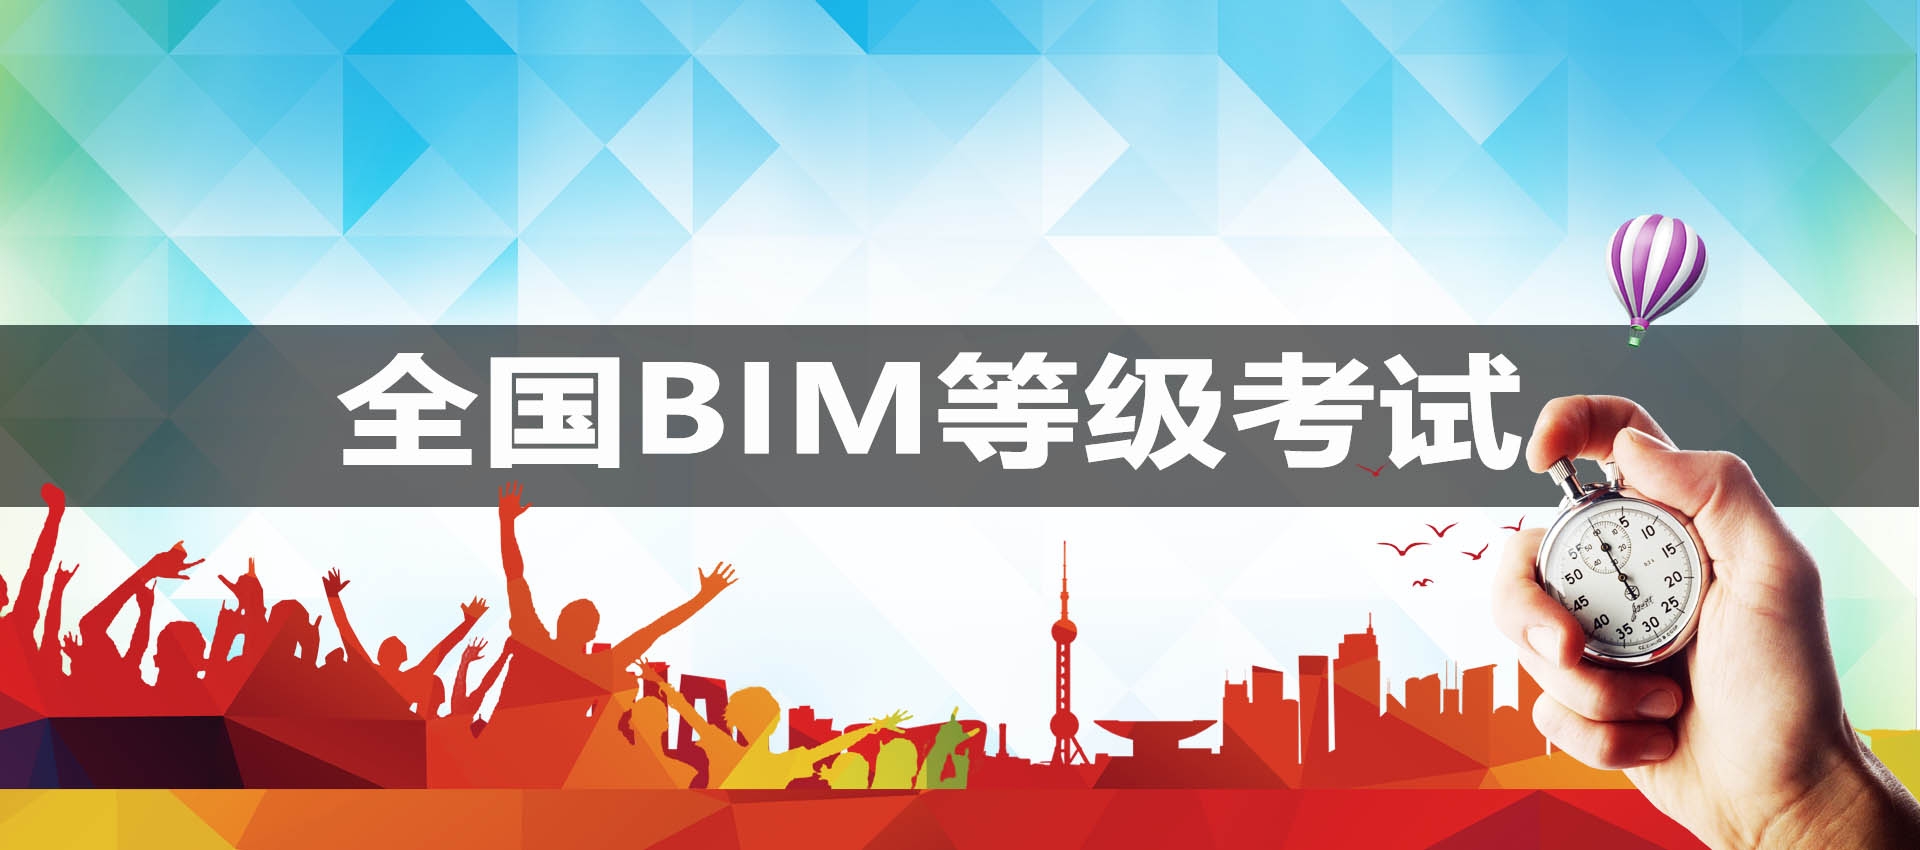 大慶中國圖學學會全國BIM技能等級考試